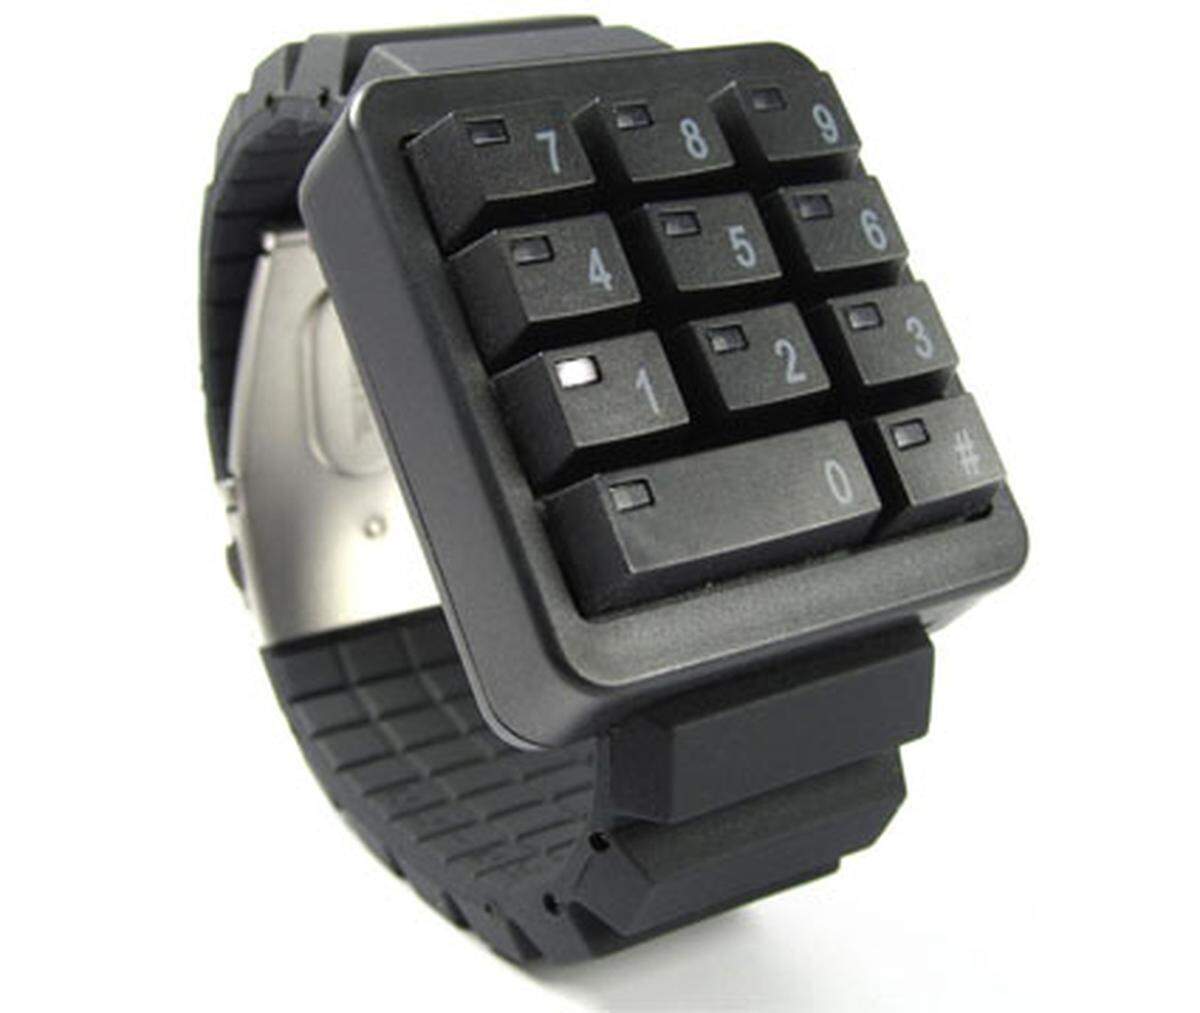 Retro-chic verspricht diese ungewöhnliche Armbanduhr. Einem Keypad einer Tastatur nachempfunden, stellt sie die Uhrzeit durch Blinken der einzelnen Zahlen dar. Wer sich die Größe und das Gewicht antun will, erhält ein Modell, das der Hersteller selbst mit "Ridiculously awesome, awesomely ridiculous." bewirbt.